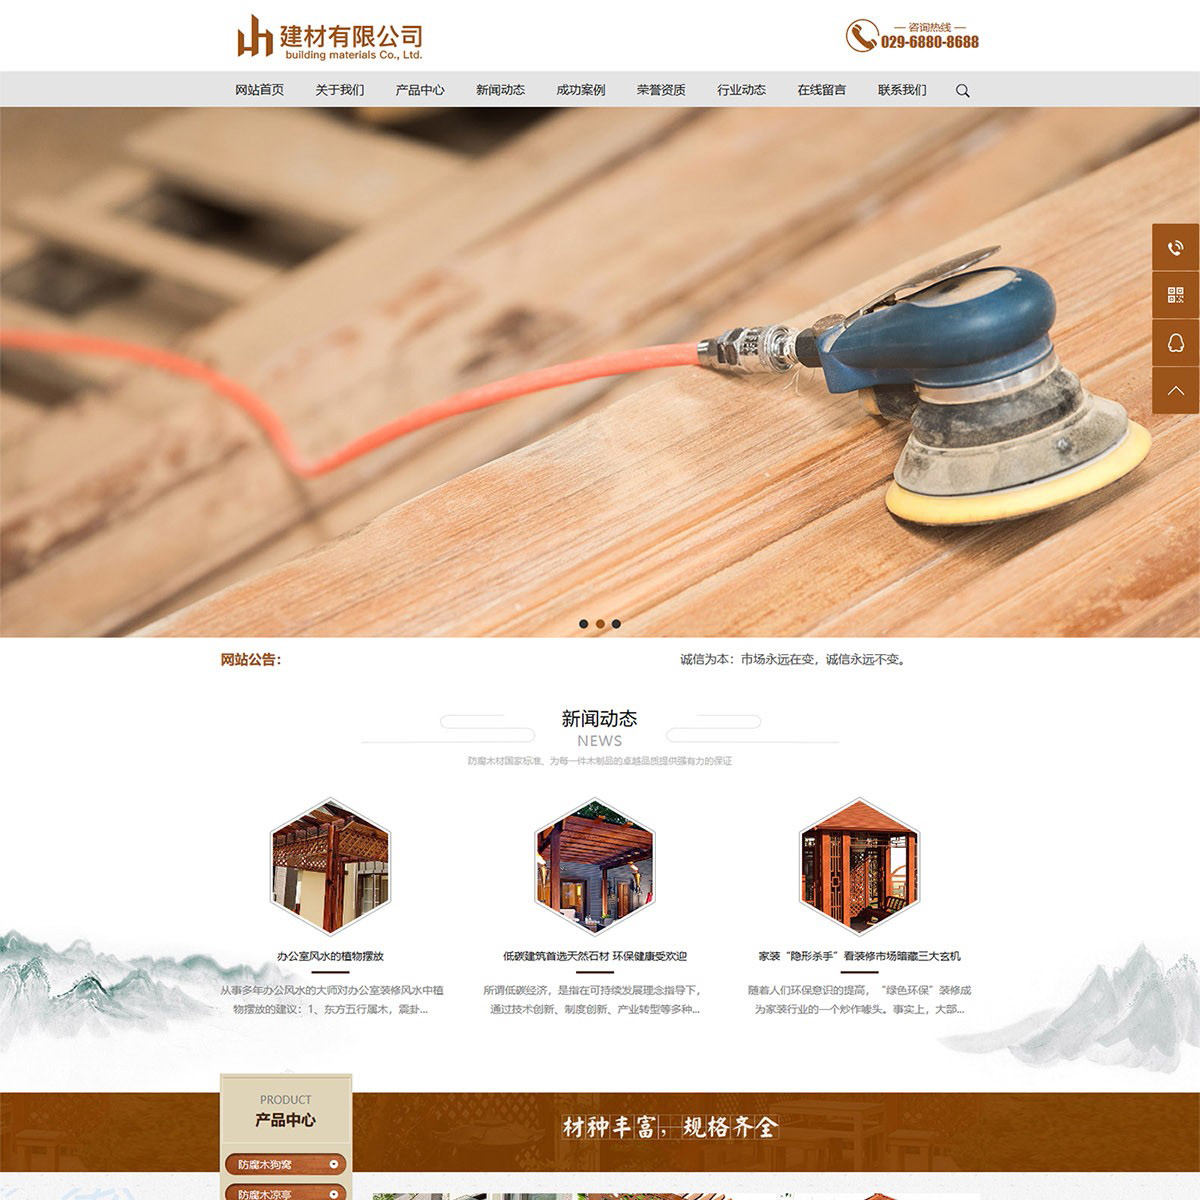 防腐木材建筑材料类公司响应式网站建设模板